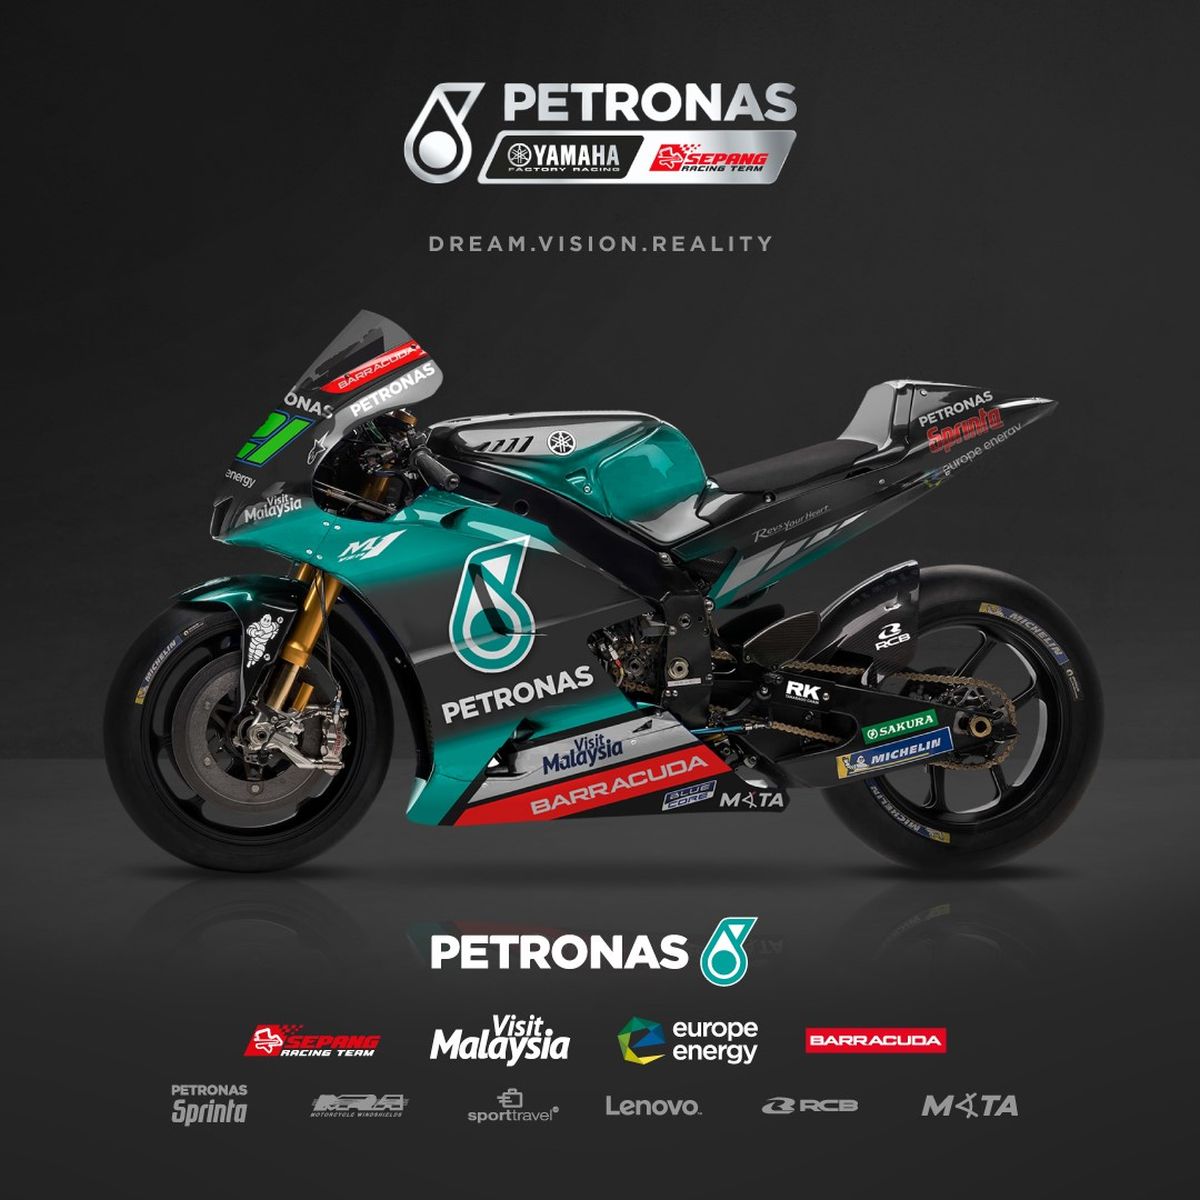 Petronas Yamaha Srt - Petronas Motogp - HD Wallpaper 